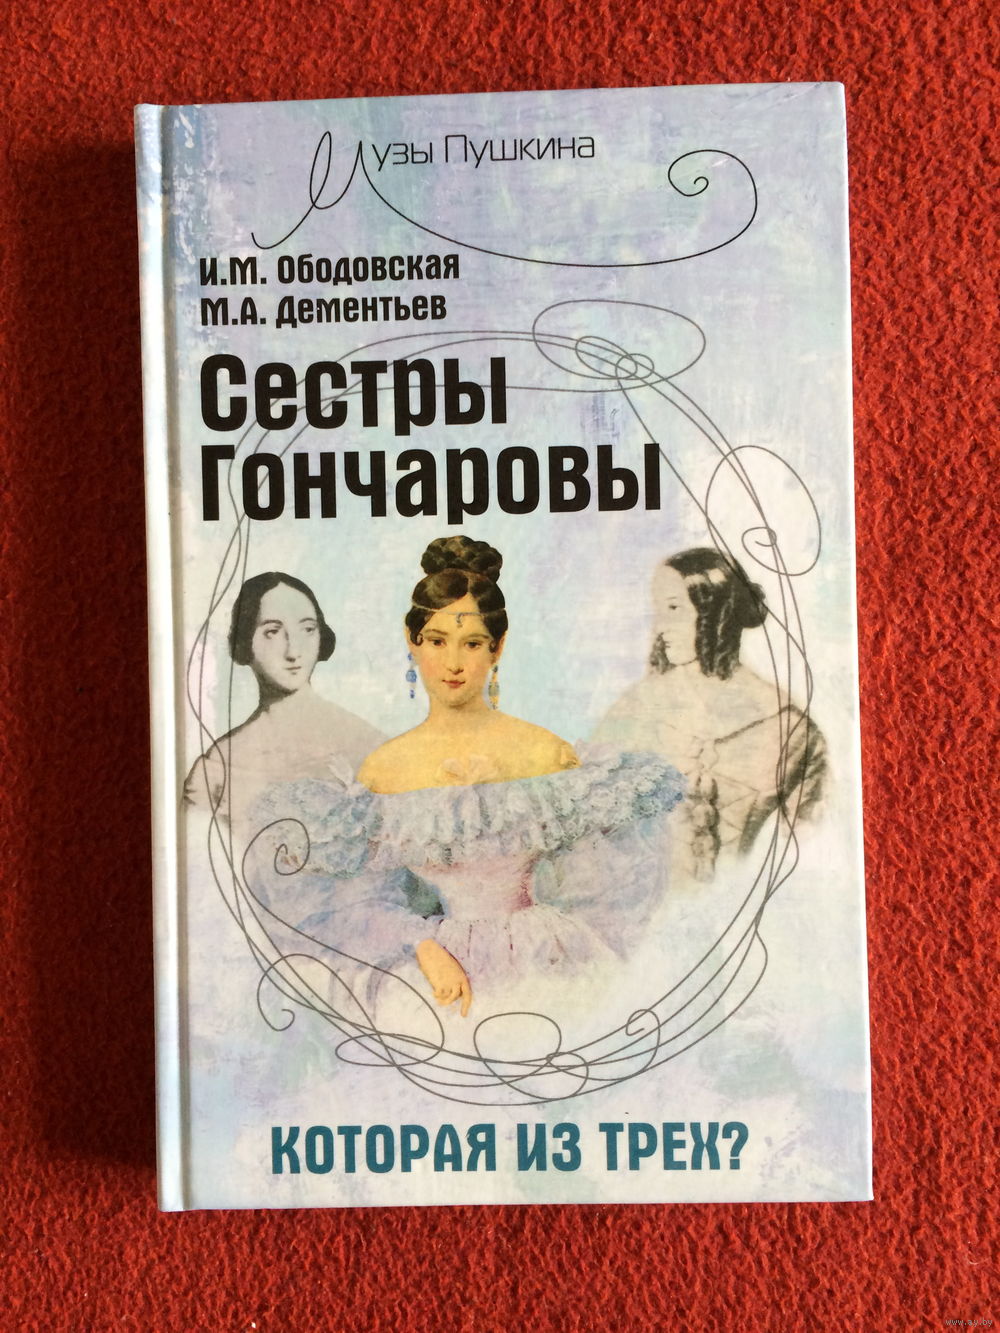 Книги о Наталье Гончаровой